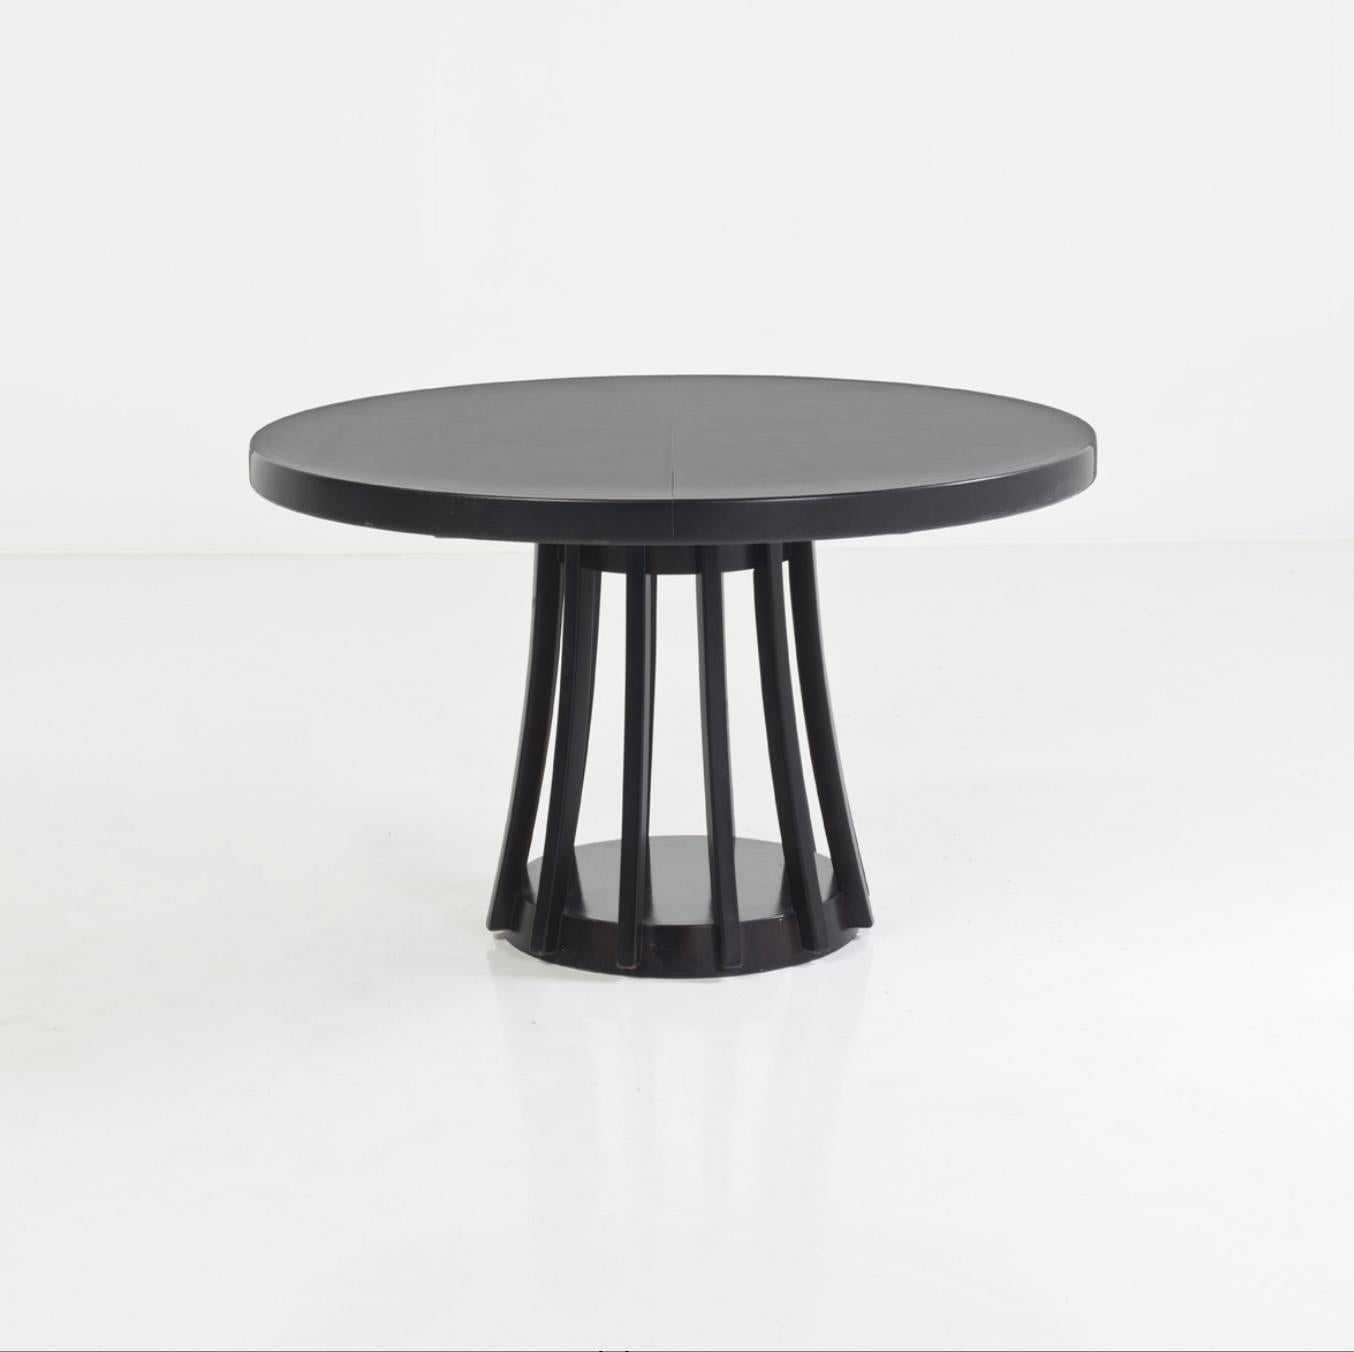 Conçue par le célèbre designer italien Angelo Mangiarotti, la table à rallonge S11 est une authentique icône de style et de bon goût

La forme ronde de la table crée une expérience conviviale et intime. De plus, la table peut être agrandie pour